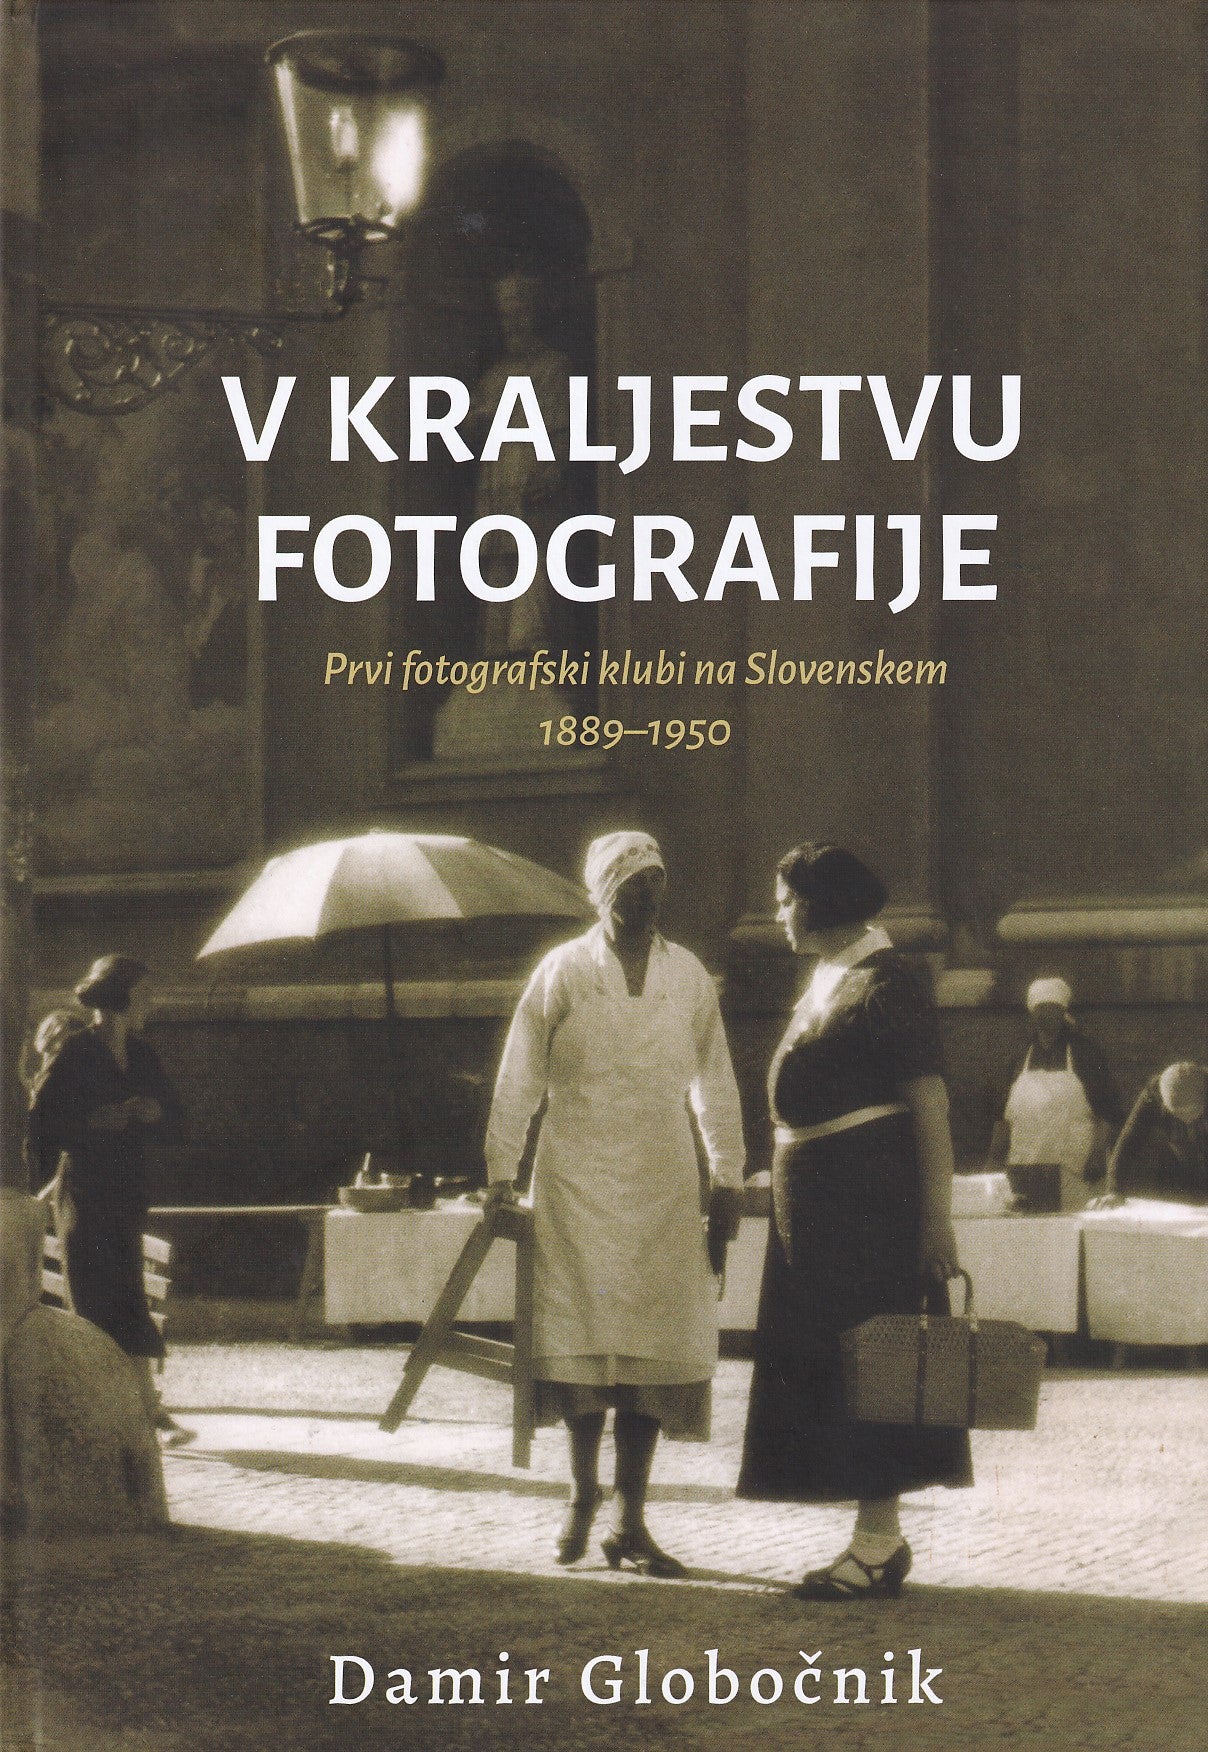 V kraljestvu fotografije: prvi fotografski klubi na Slovenskem 1889-1950